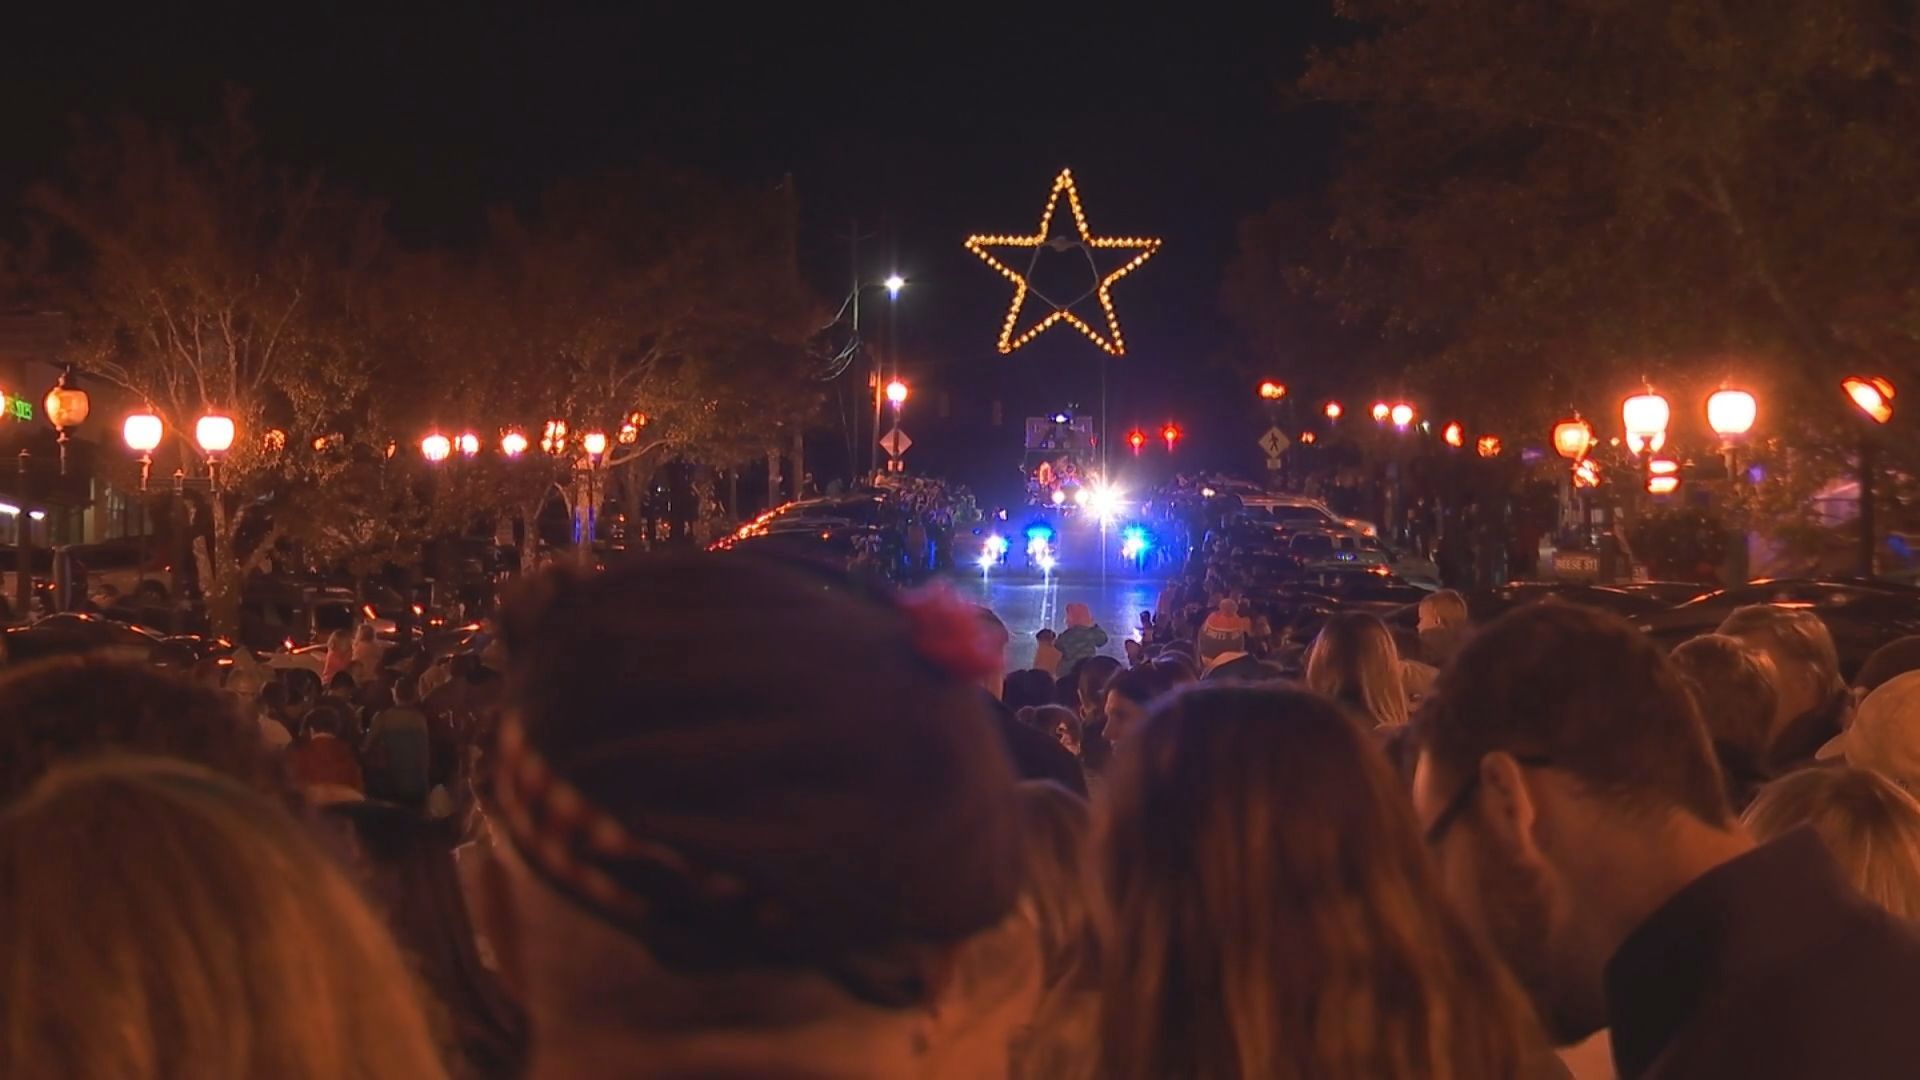 Homewood celebra las fiestas con un desfile navideño por la ciudad